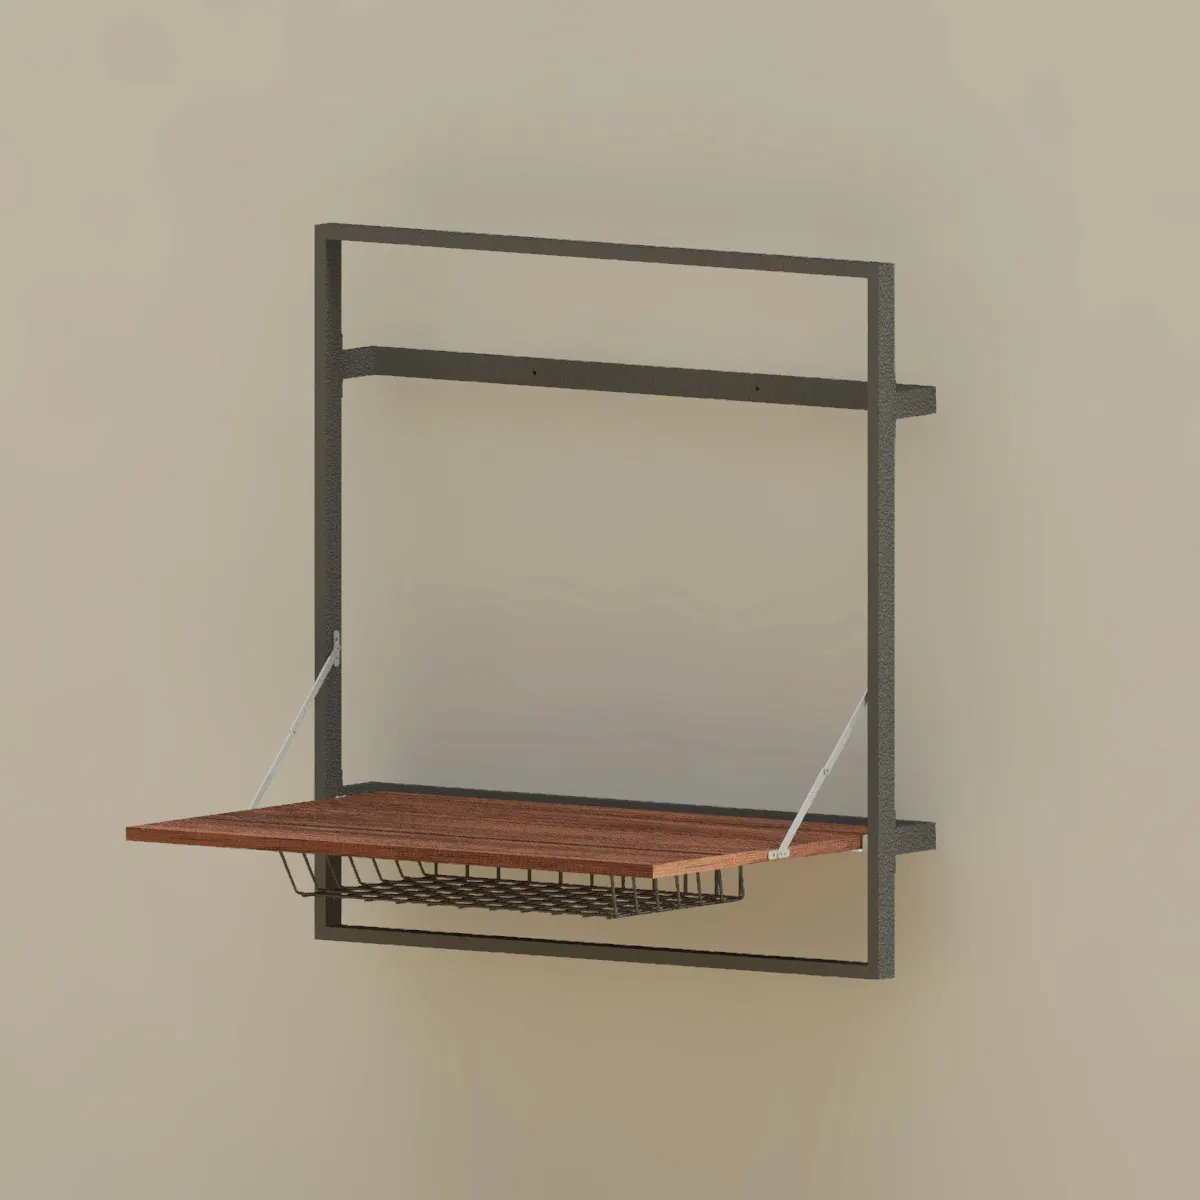 Prateleira de parede dobrável para mdf, placa de madeira e metal, prateleira flutuante com cesta de armazenamento